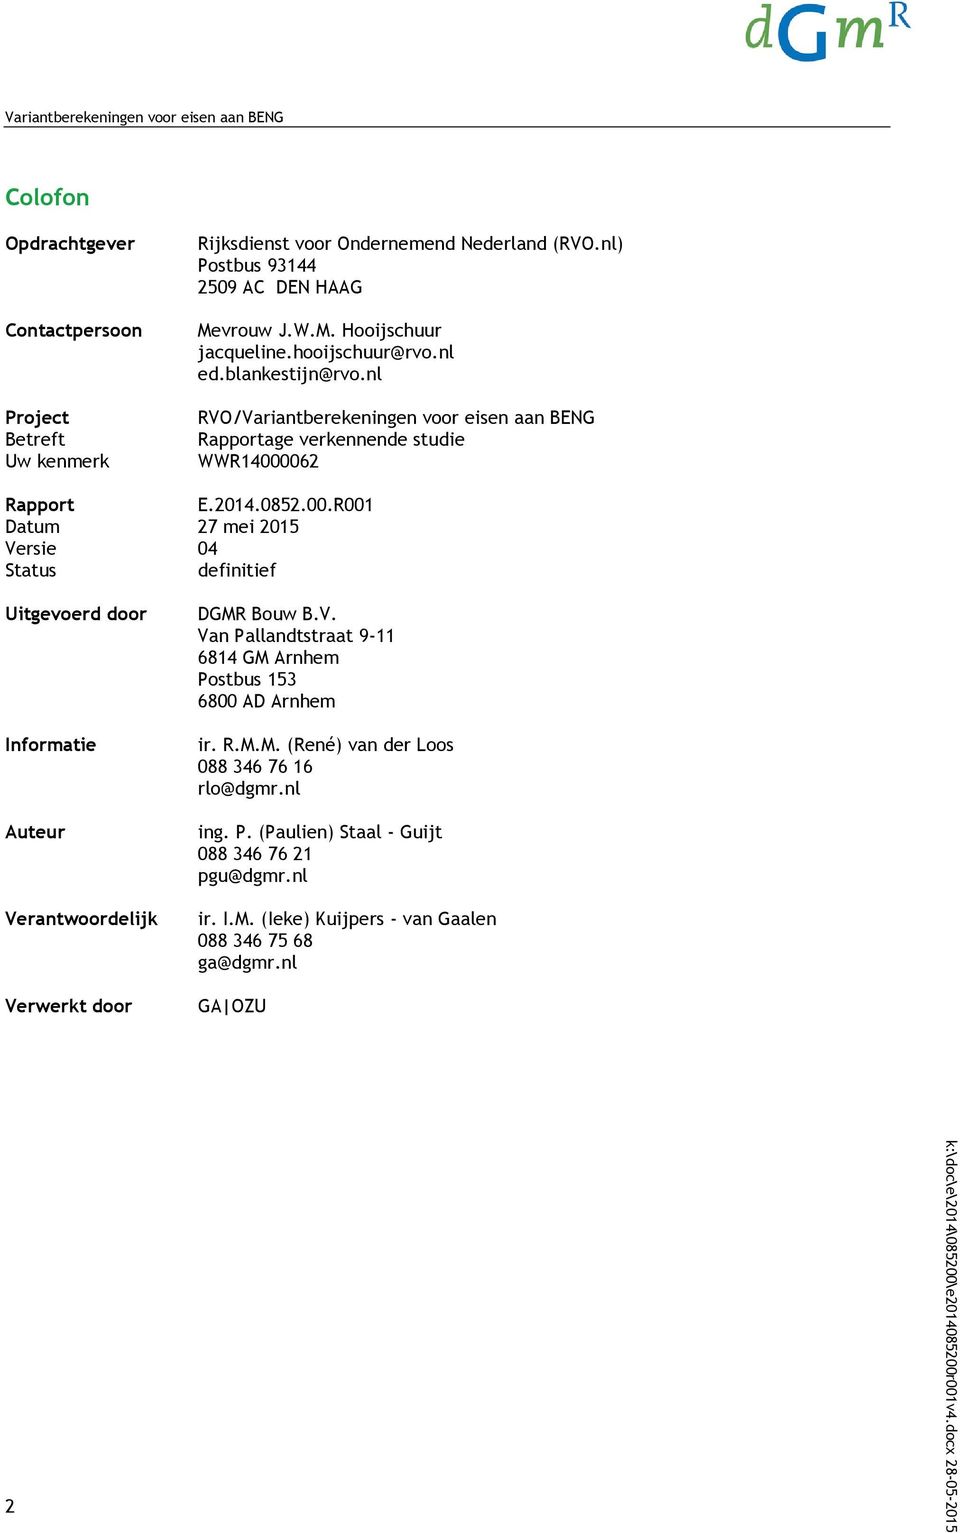 062 Rapport E.2014.0852.00.R001 Datum 27 mei 2015 Versie 04 Status definitief Uitgevoerd door Informatie Auteur Verantwoordelijk Verwerkt door DGMR Bouw B.V. Van Pallandtstraat 9-11 6814 GM Arnhem Postbus 153 6800 AD Arnhem ir.